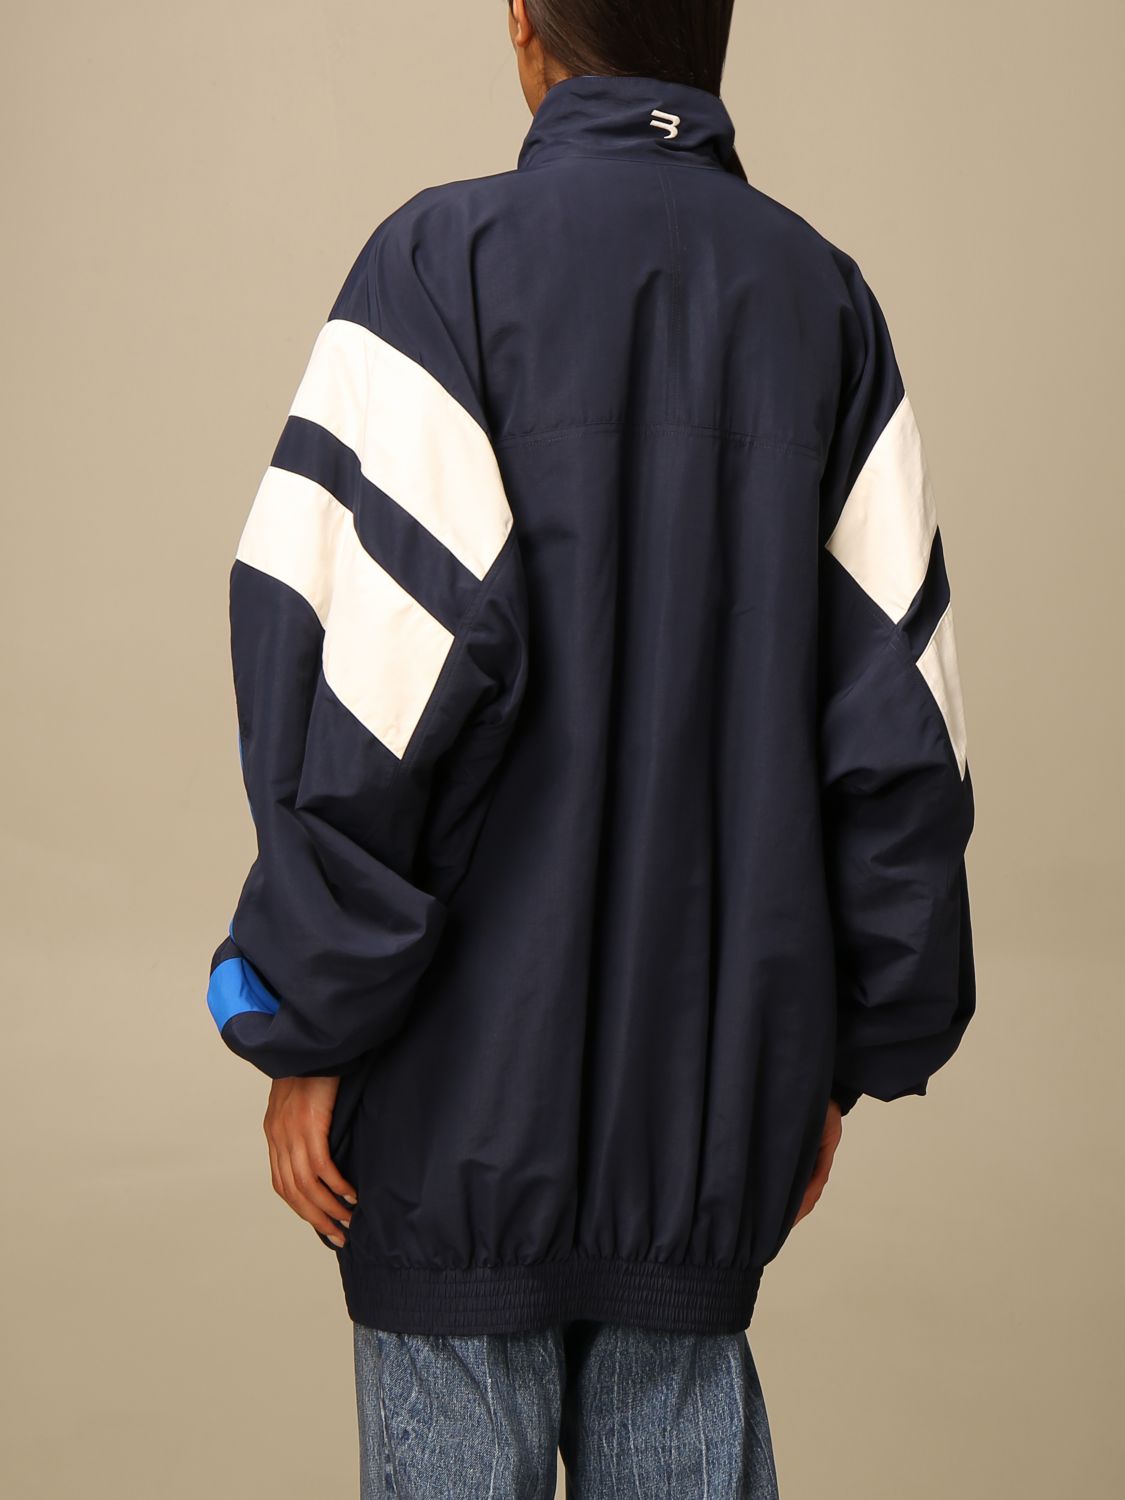 BALENCIAGA: Over jacket in technical fabric with logo | Jacket Balenciaga Women Gnawed | Jacket Balenciaga 659031 TKO48 GIGLIO.COM